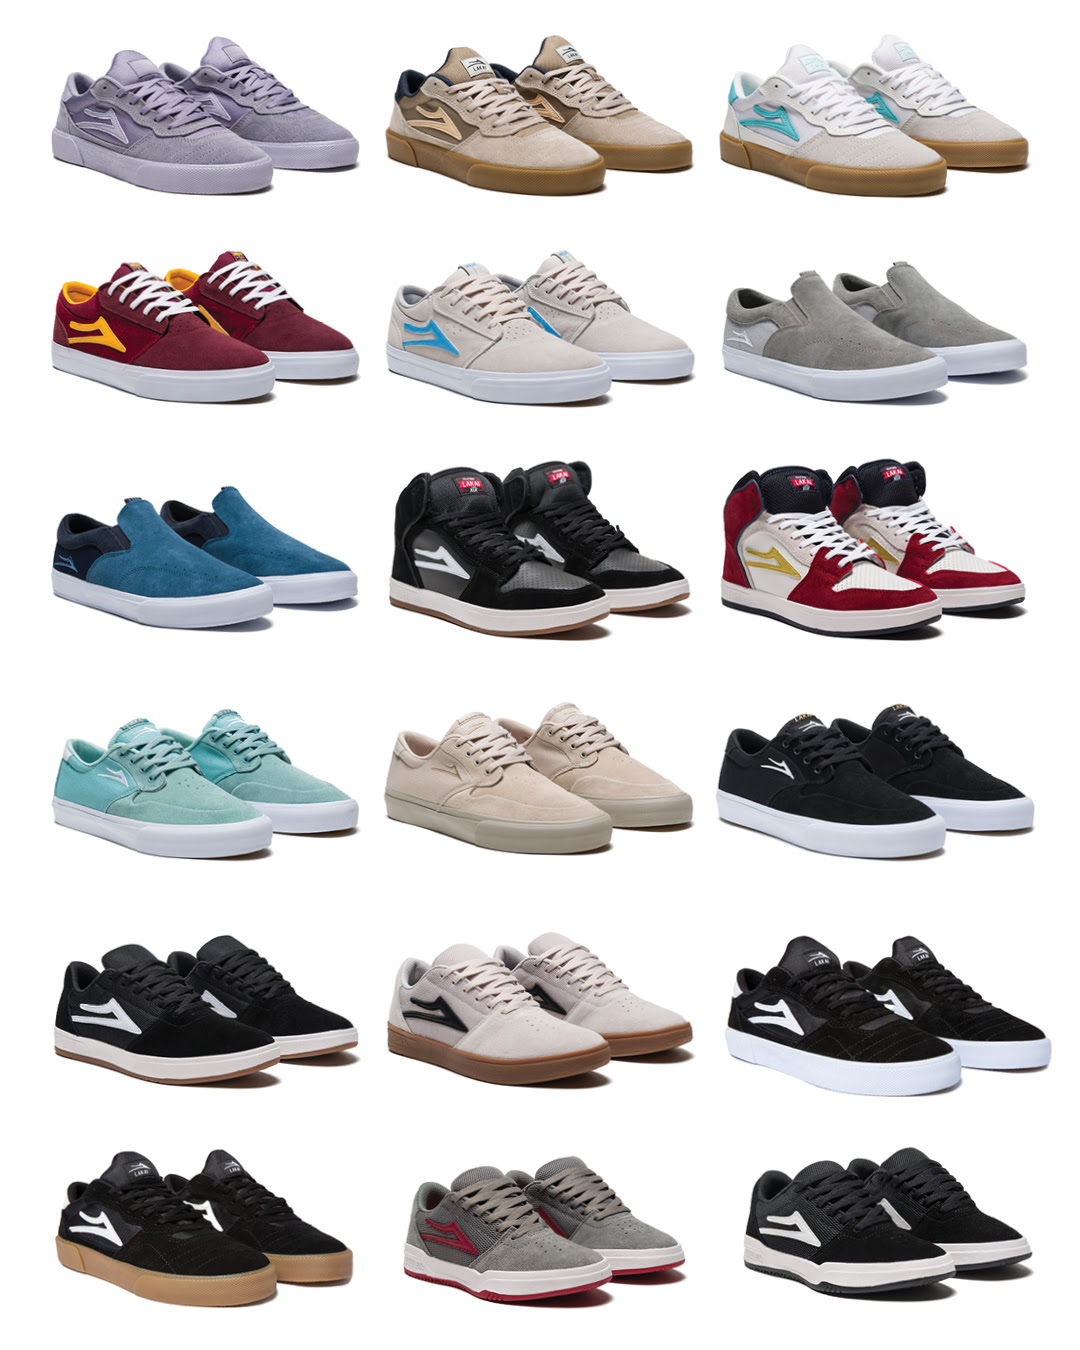 Studio image shot collage of Lakai shoes